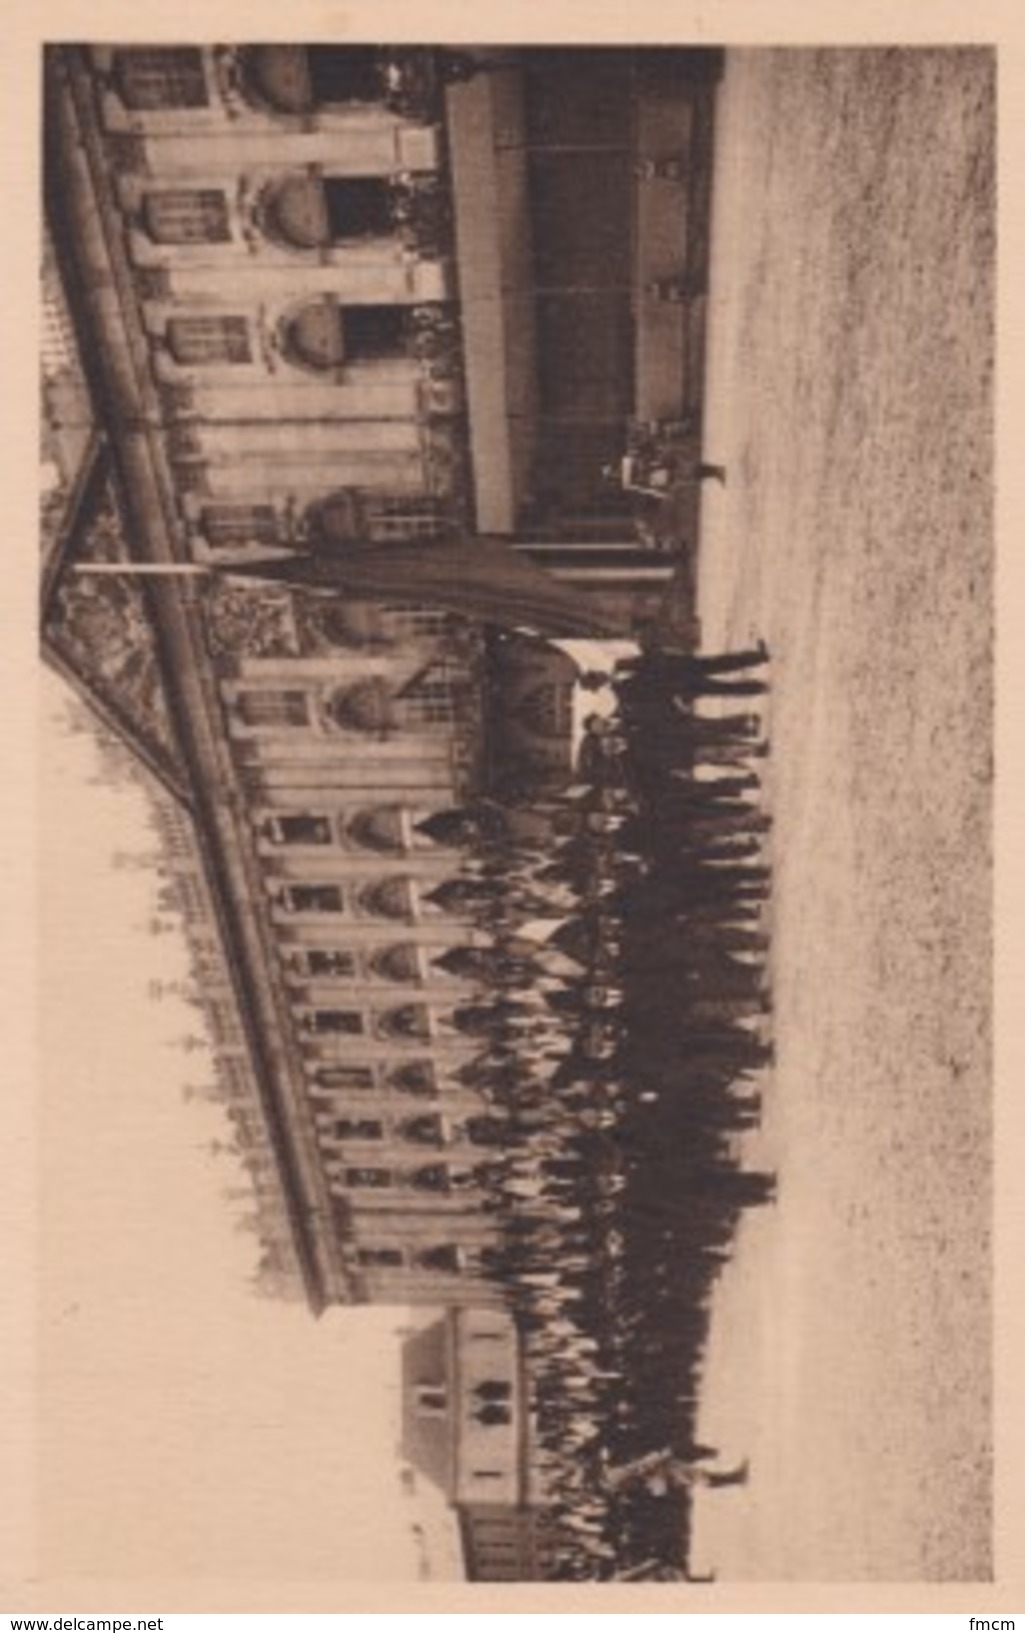 Obsèques nationales du Maréchal Lyautey à Nancy le 2 août 1934. Série de 20 cartes postales